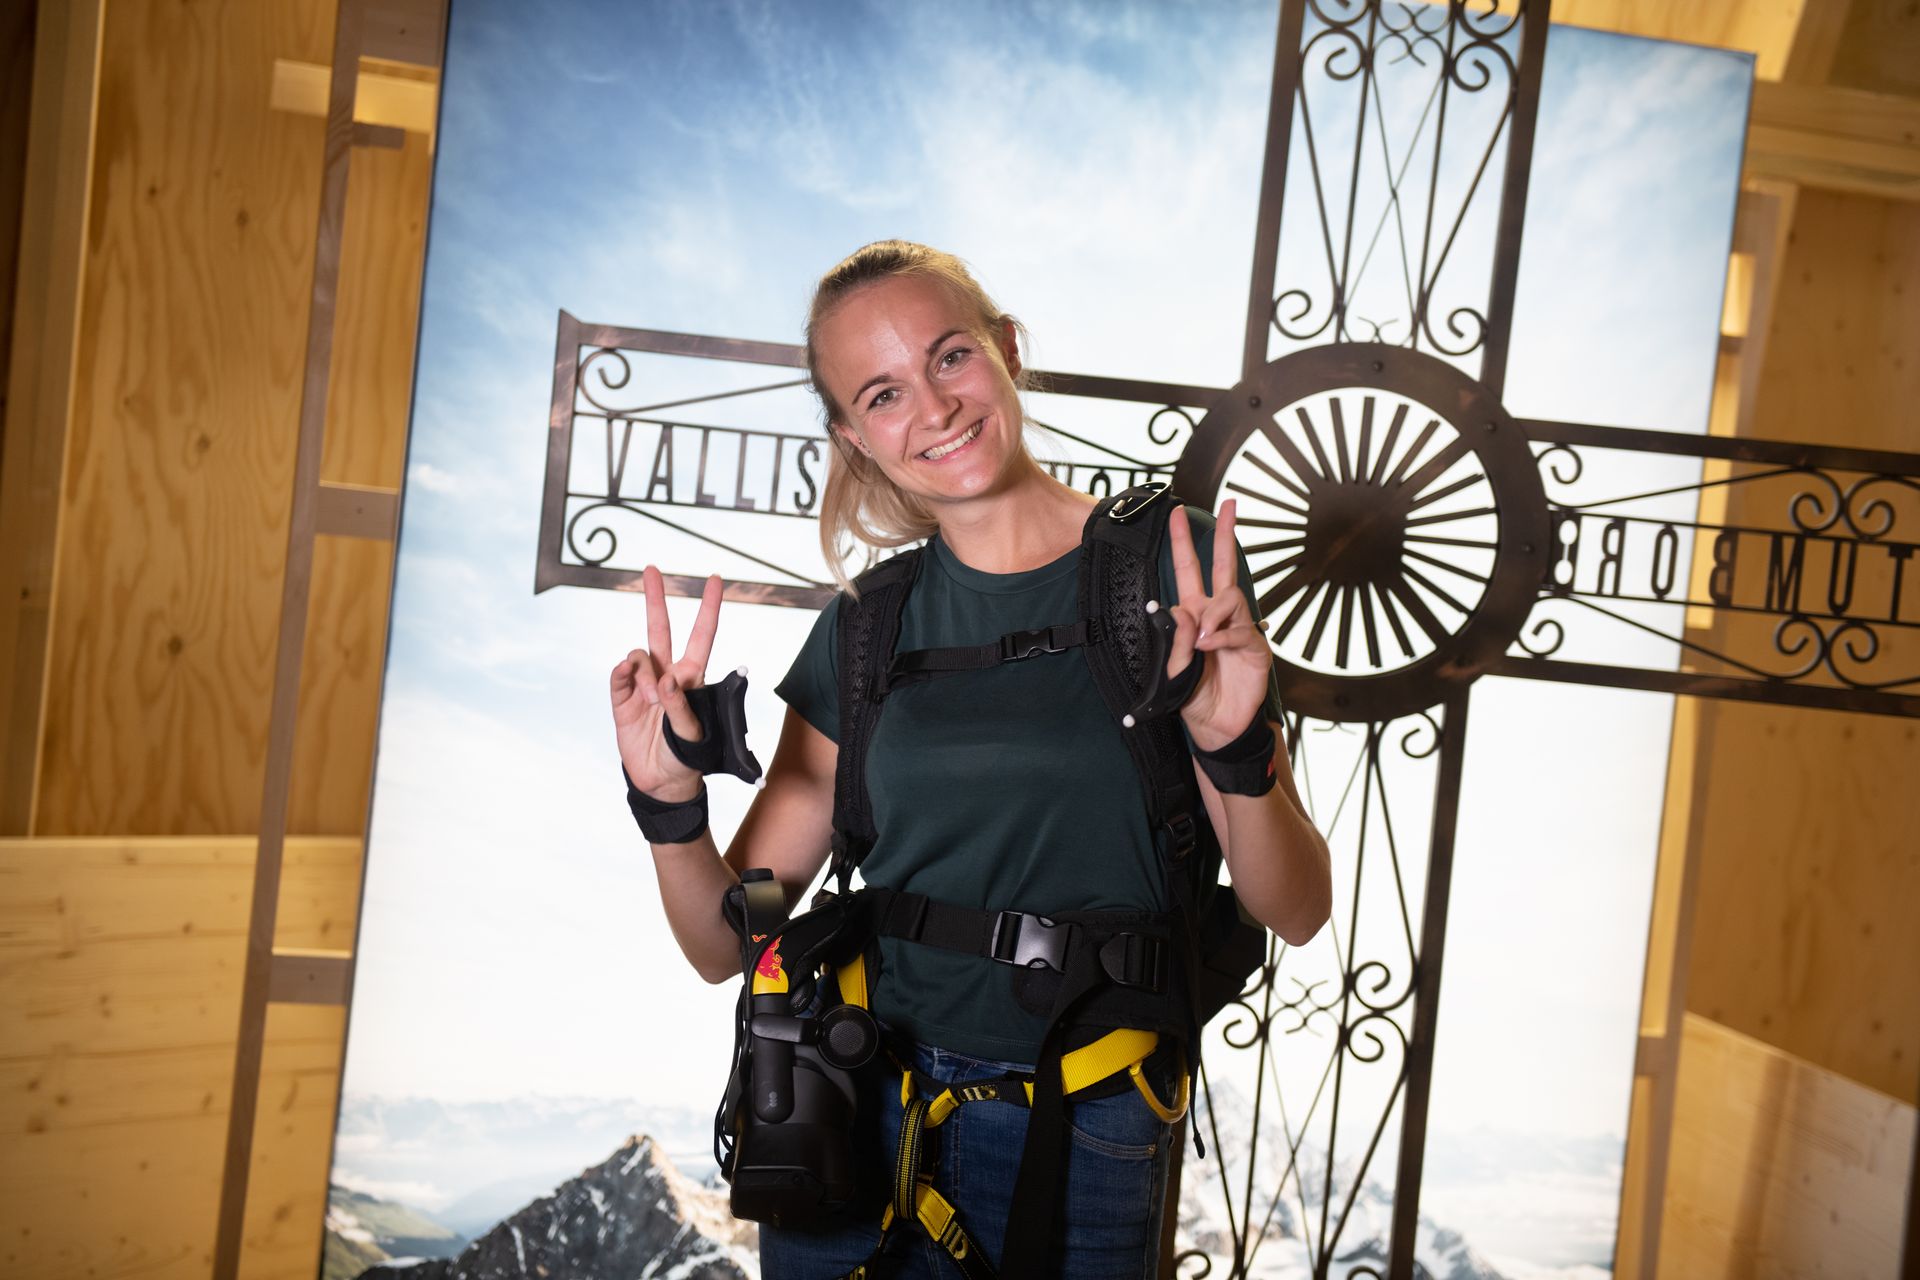 Люцерндегі Швейцария көлік мұражайында виртуалды шындық көзілдірігімен және жартасқа өрмелеу әбзелдерімен «қарулы» Маттерхорнға шығуды іс жүзінде шешуге болады: бұл Red Bull Switzerland және әртүрлі серіктестердің «The Edge Matterhorn» деп аталатын бастамасы. VR», ол арқылы альпинистер Жереми Хейц пен Сэм Антаматтеннің нағыз өрлеуі, Церматттың таулы гидтері қайталанды, сонымен қатар желдің, тербелістің, текстураның және көптеген нысандардың немесе көрініс элементтерінің 4D әсерлерін қамтамасыз етеді.